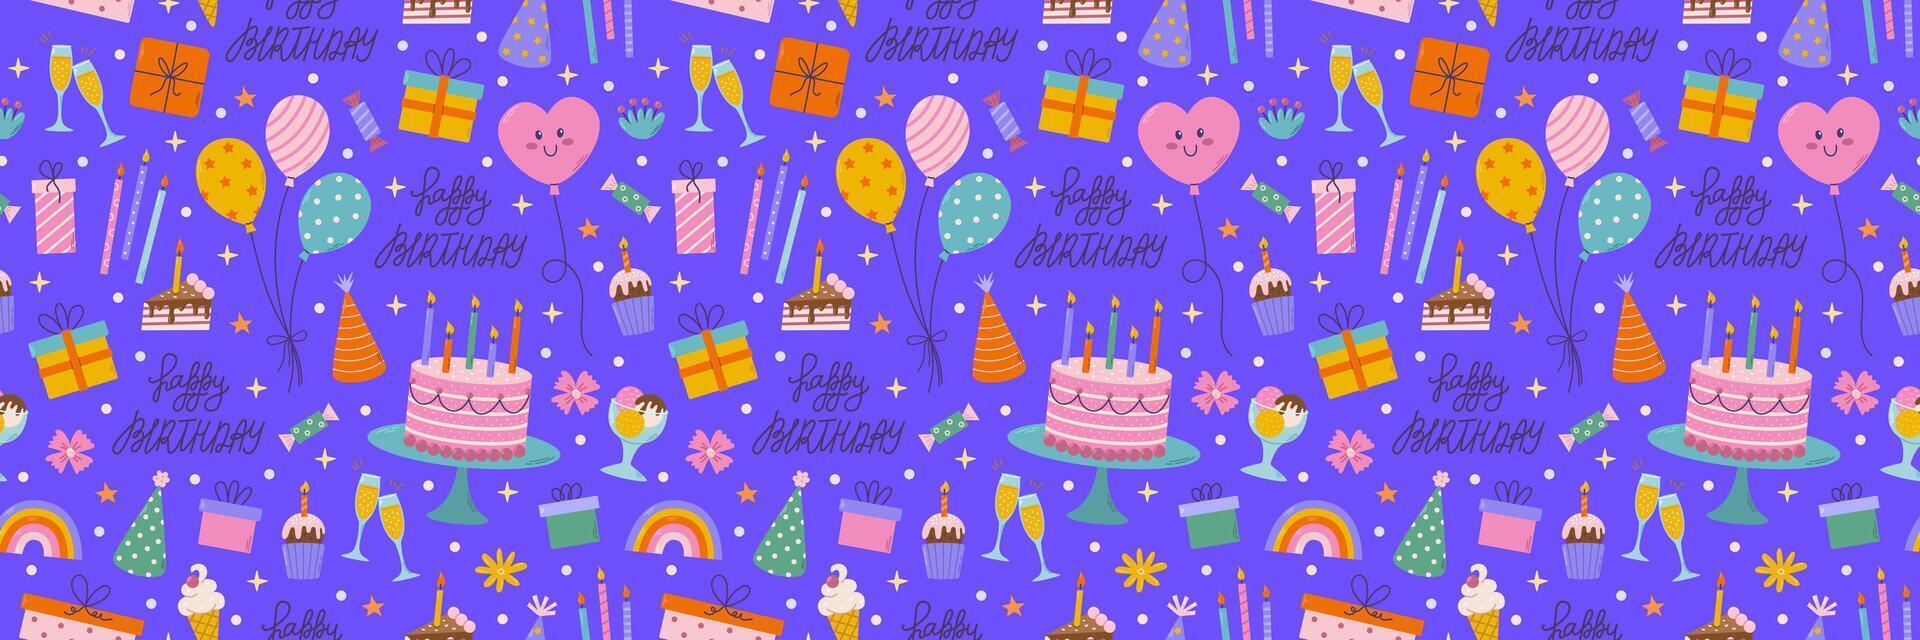 Geburtstag nahtlos Muster. anders Party Objekte, bunt Urlaub Artikel, Geschenk, Kuchen, Ballon vektor